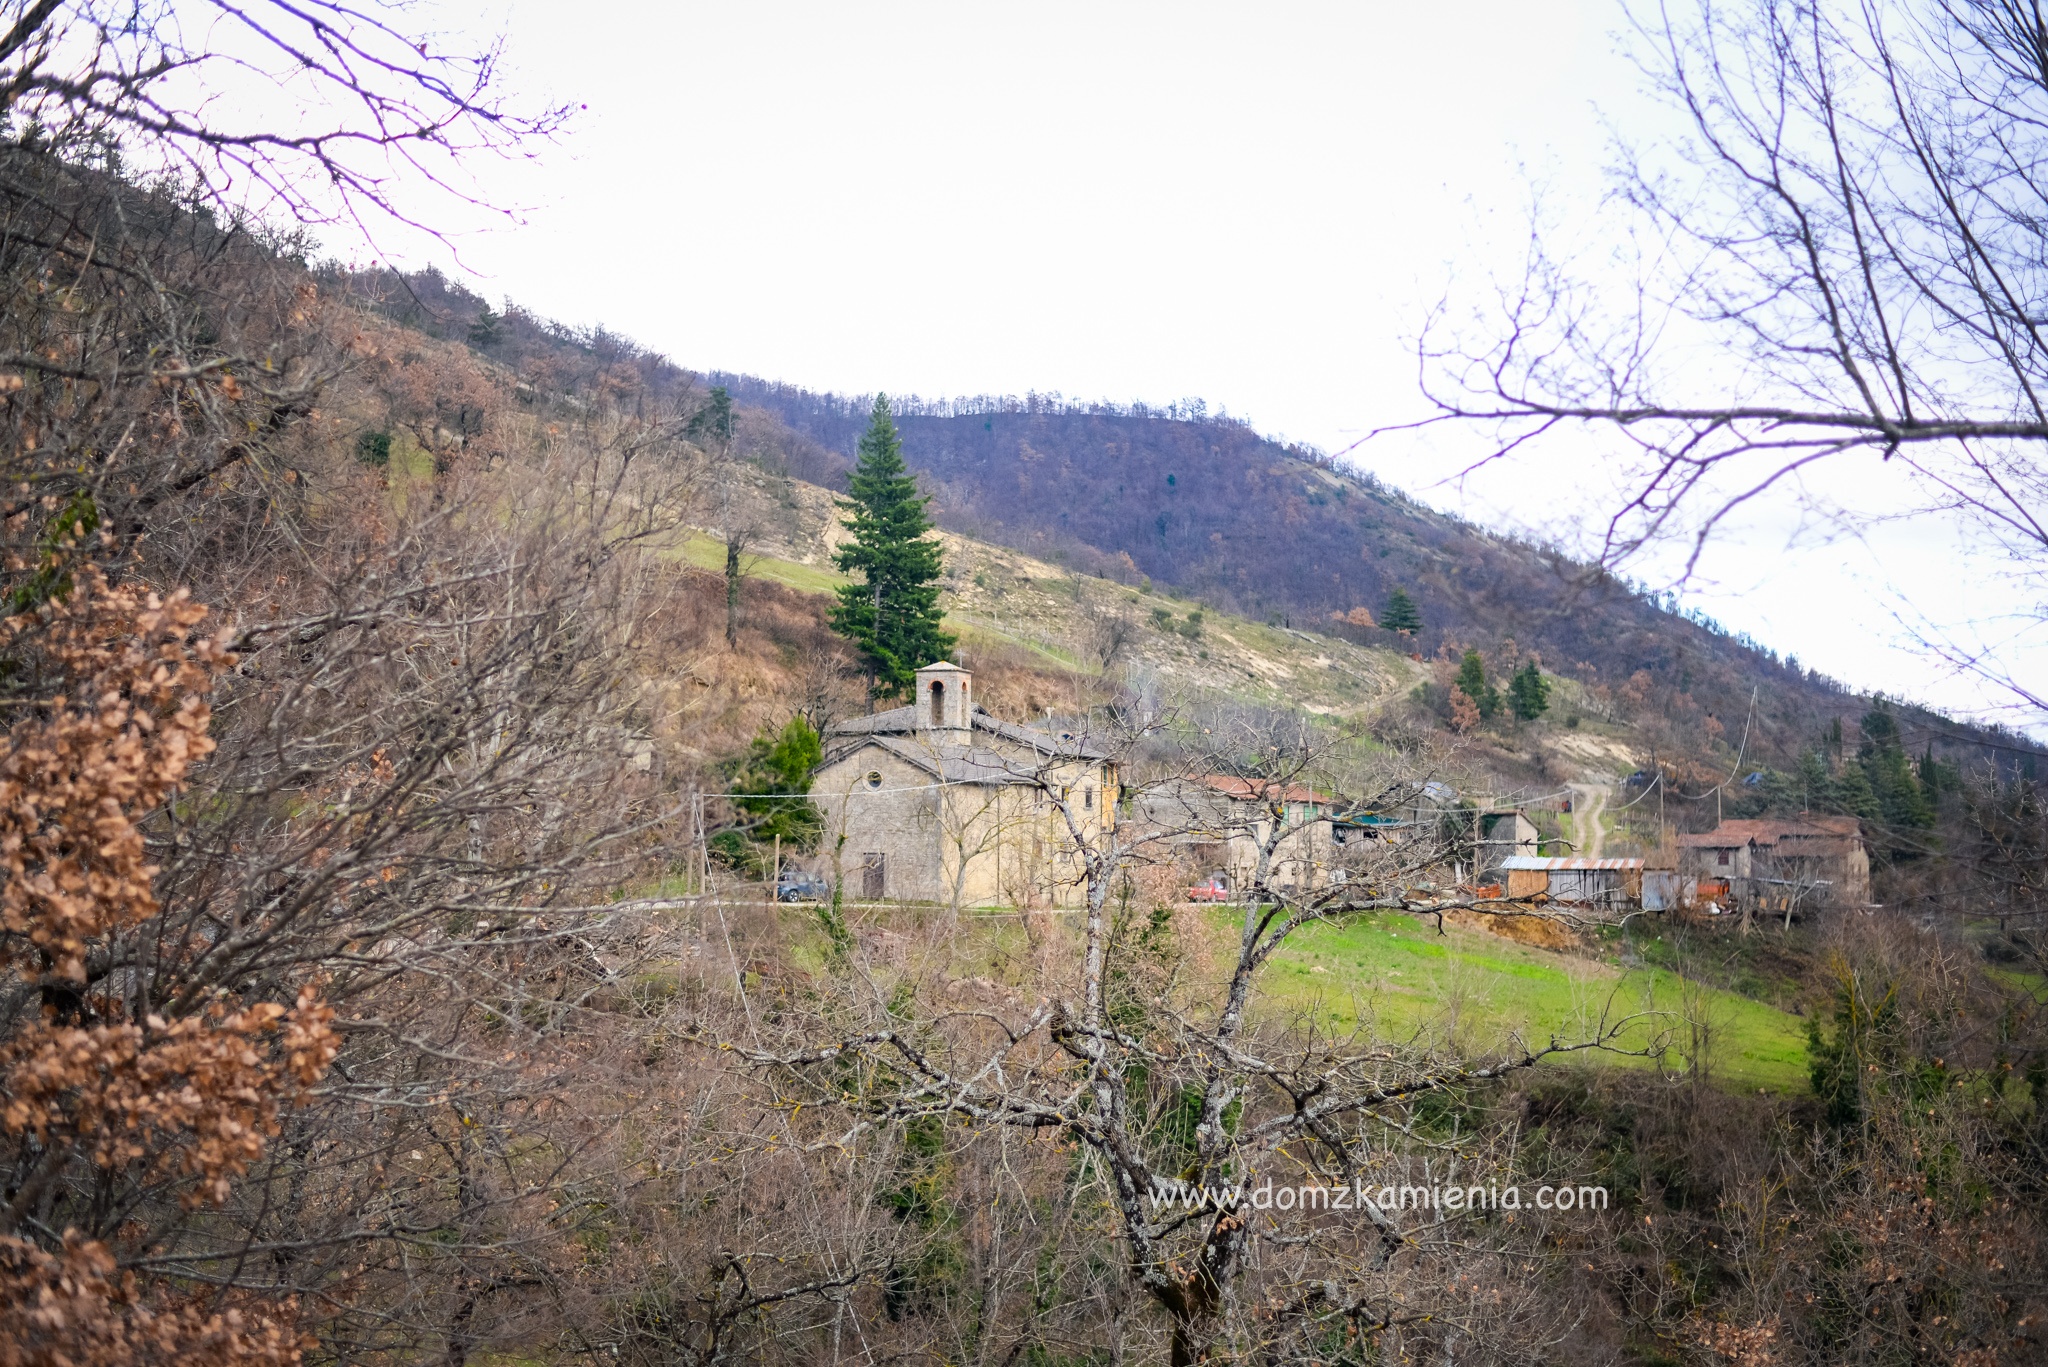 Dom z Kamienia blog, Mantigno